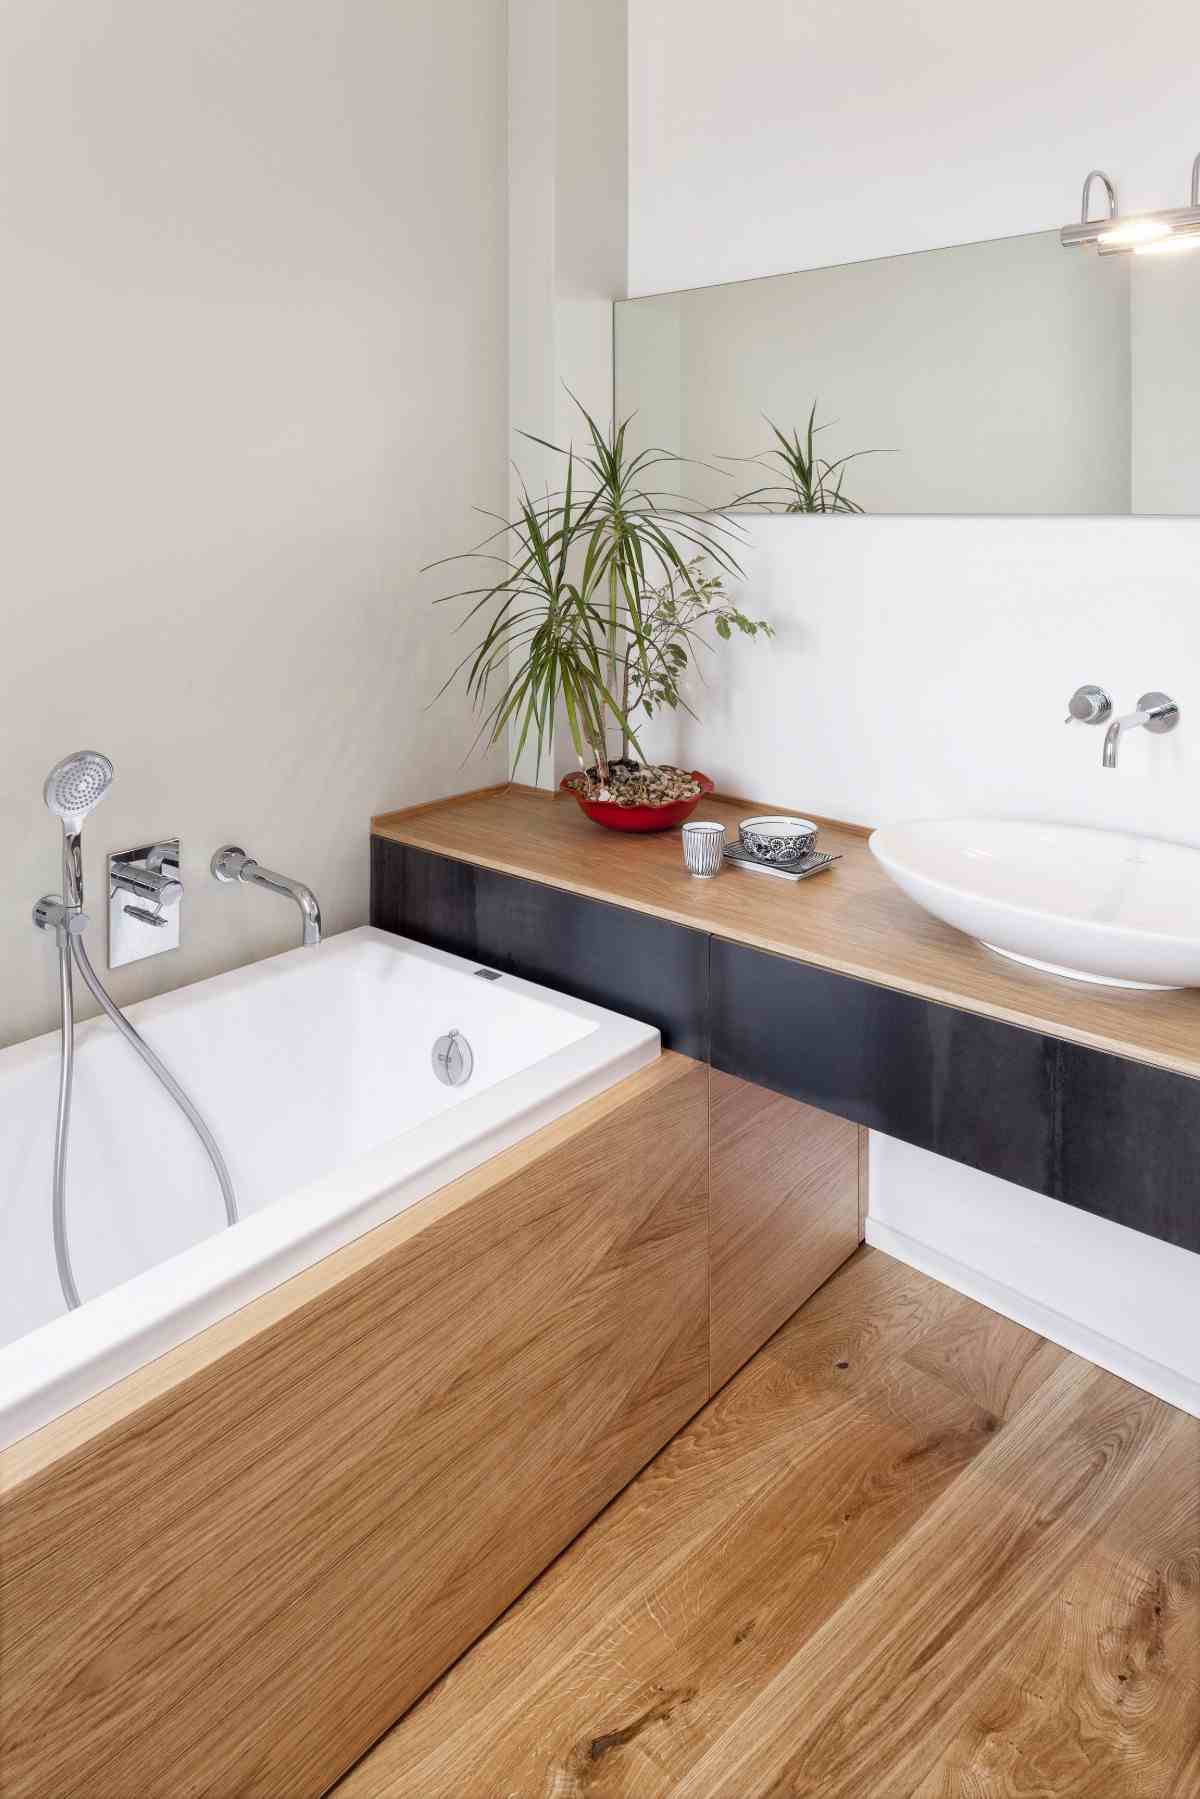 træbeklædning som hovedelement i badeværelset med badekar og håndvask